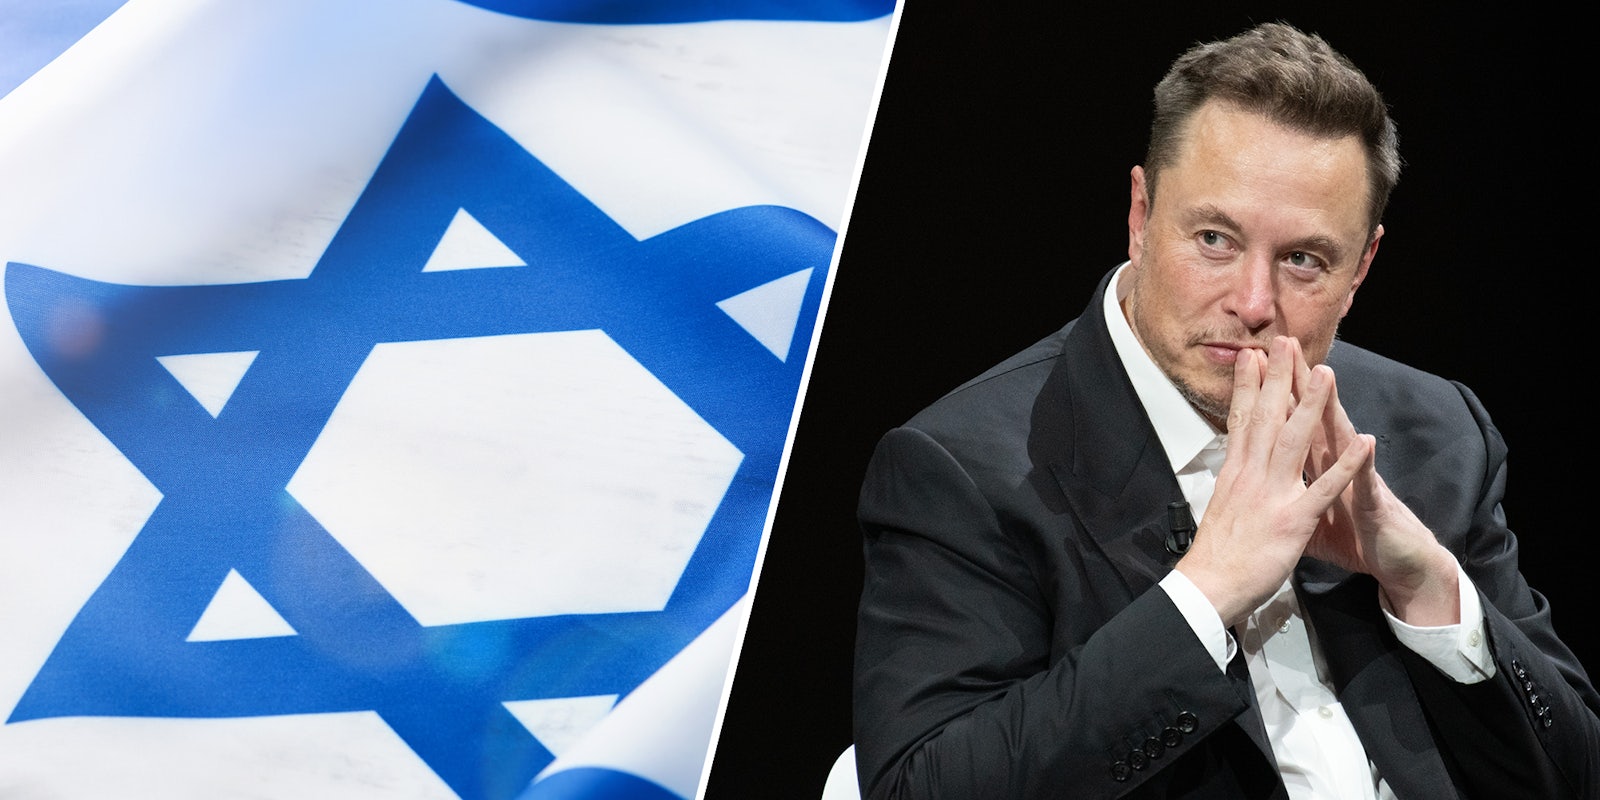 Elon Musk's visit to Israel sparks backlash